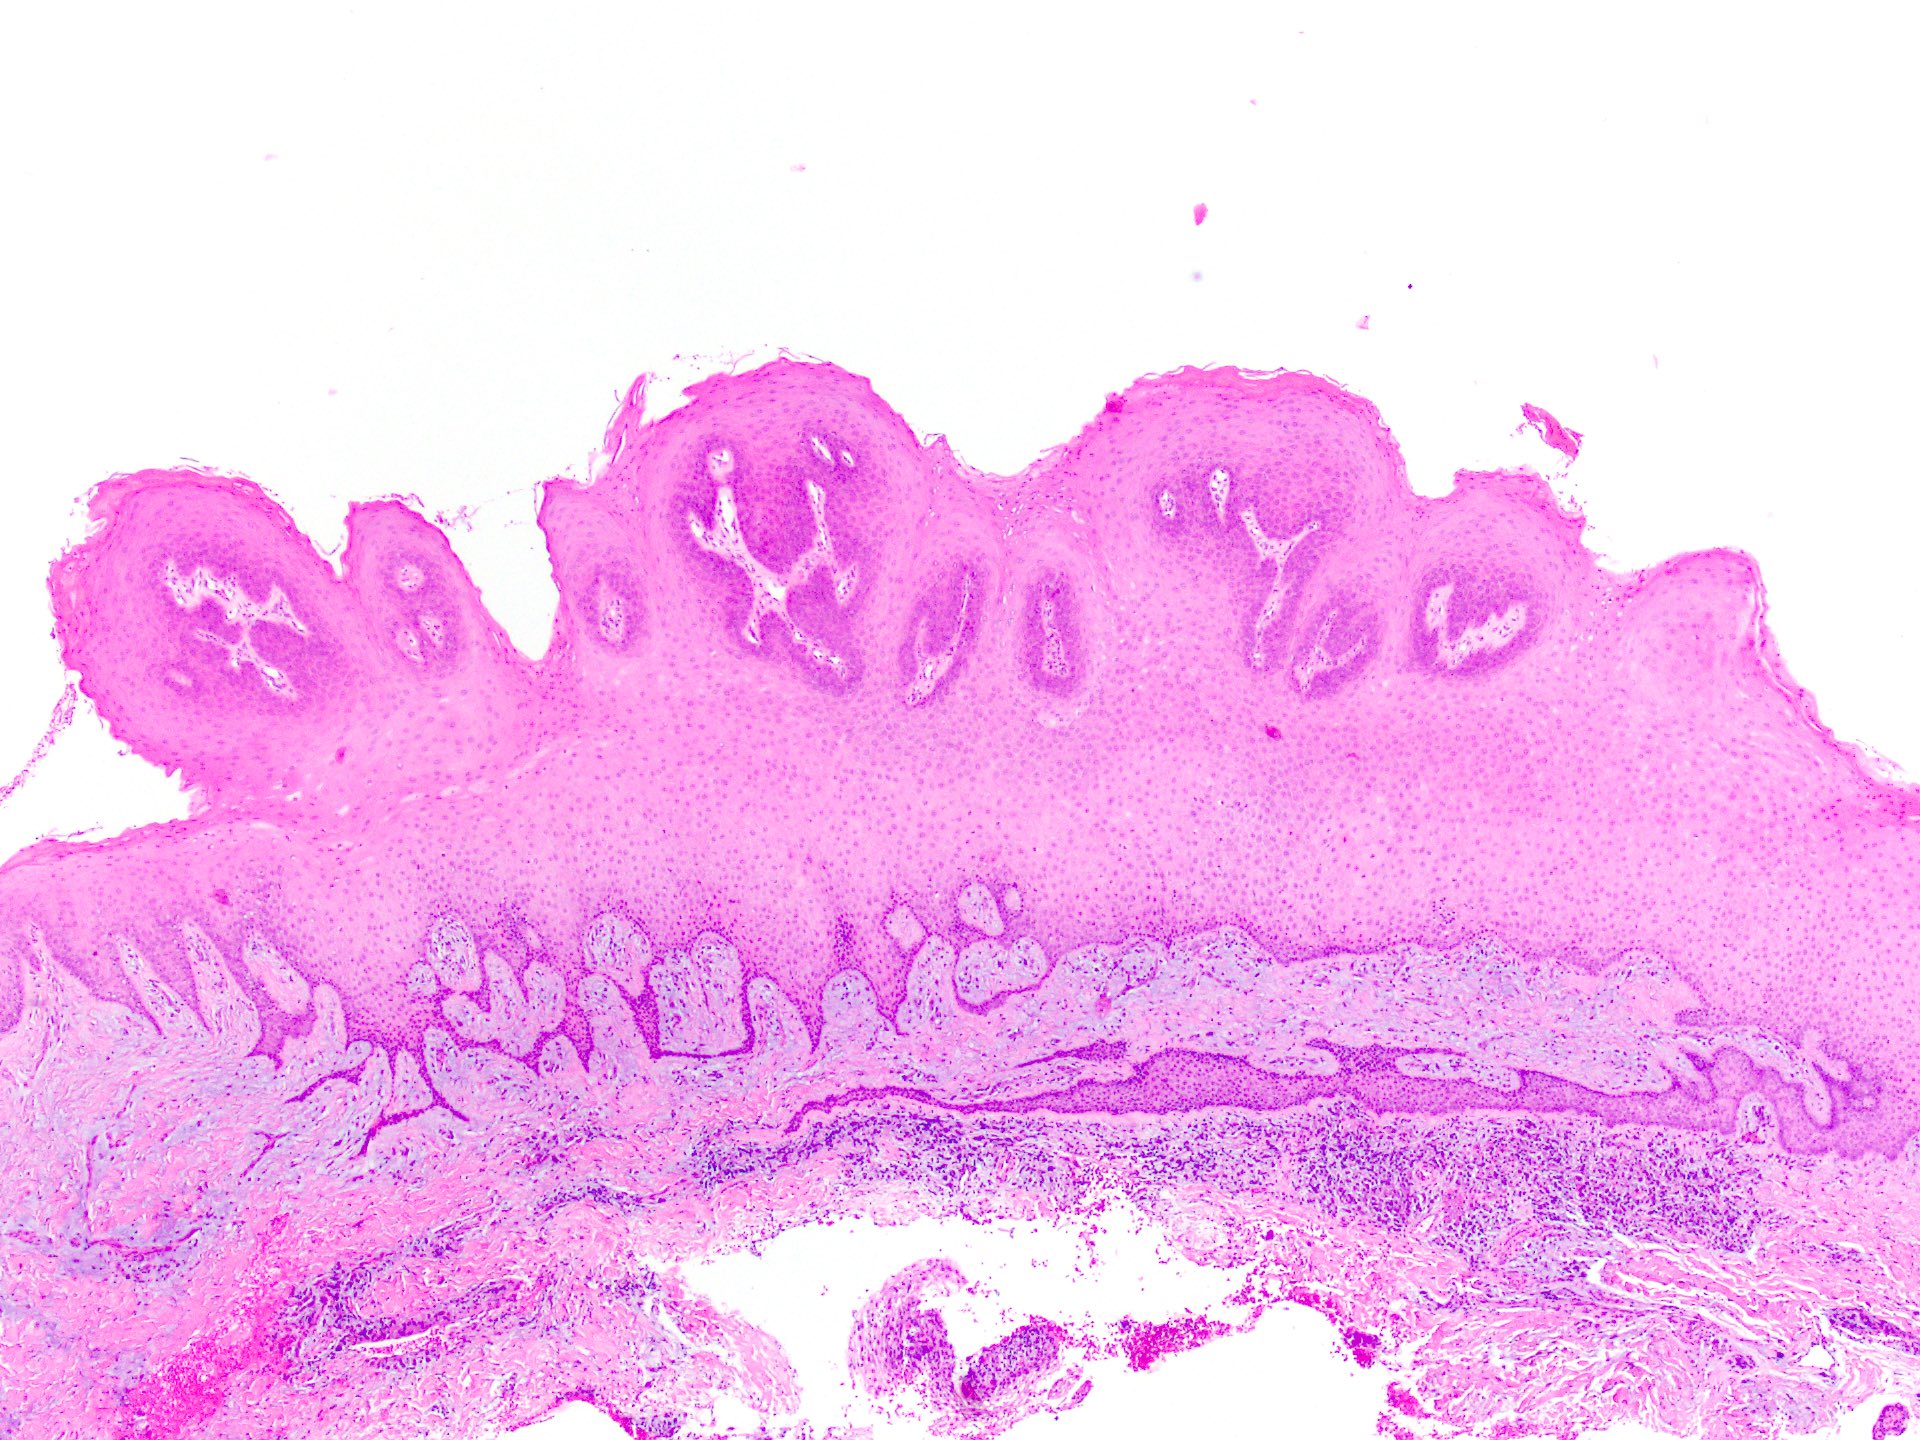 Prostate histology pathology outlines - Squamous papilloma skin pathology outlines